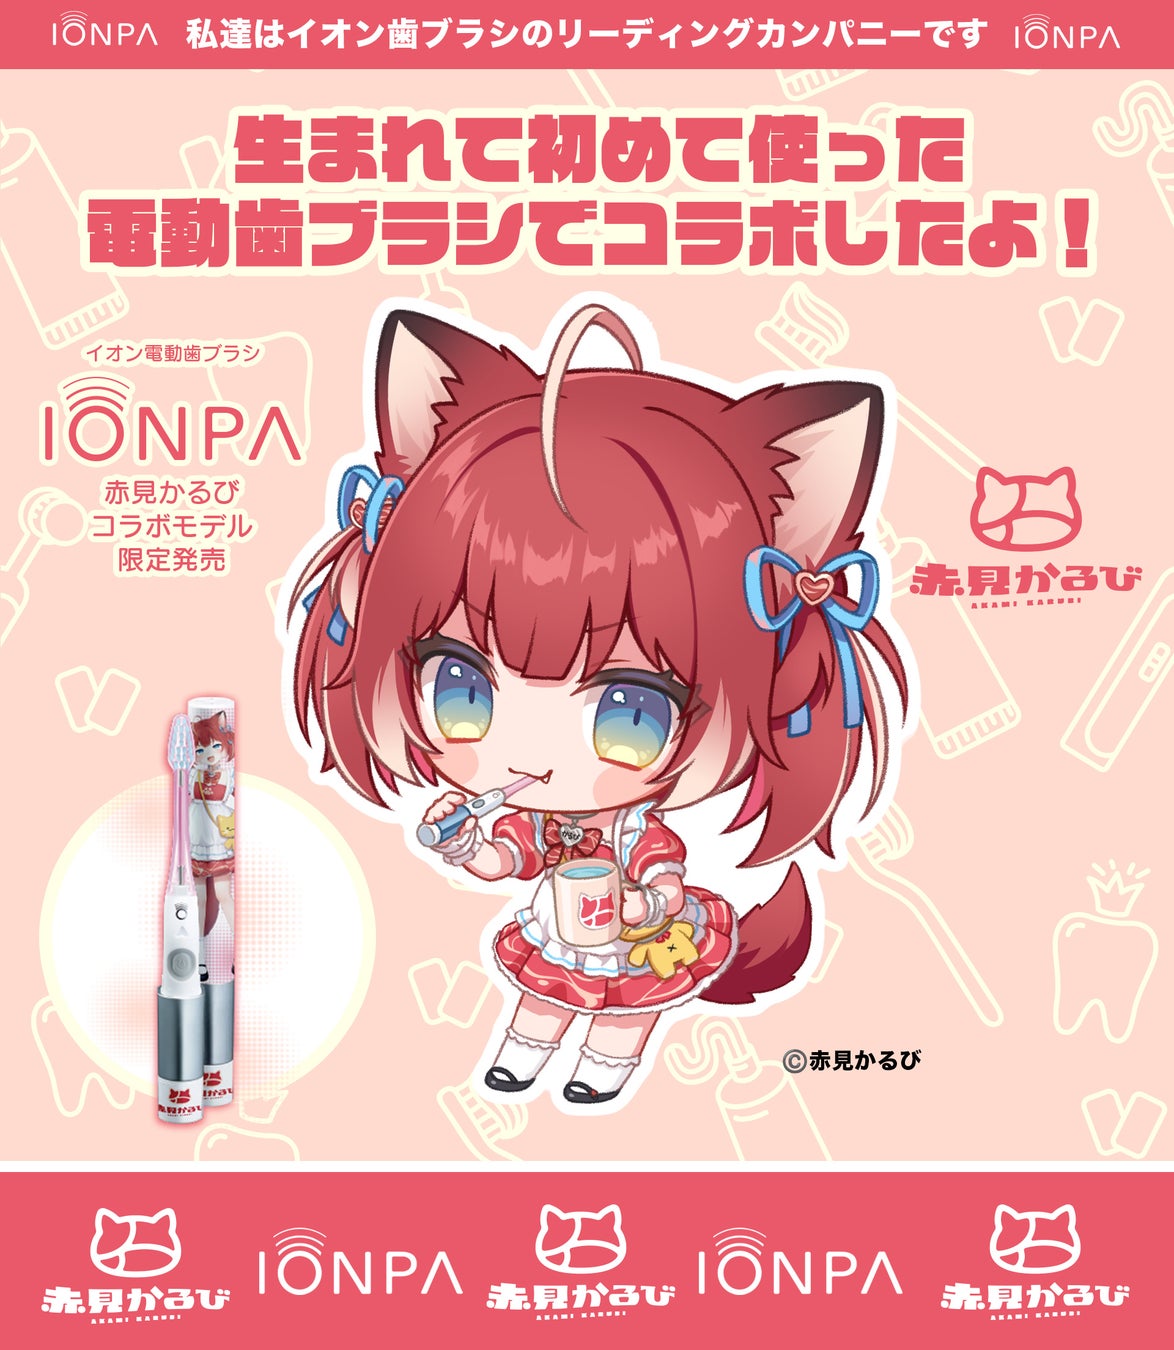 イオン歯ブラシ『IONPA』×VTuber『赤見かるび』電動歯ブラシ特別セットが期間限定で発売開始!!